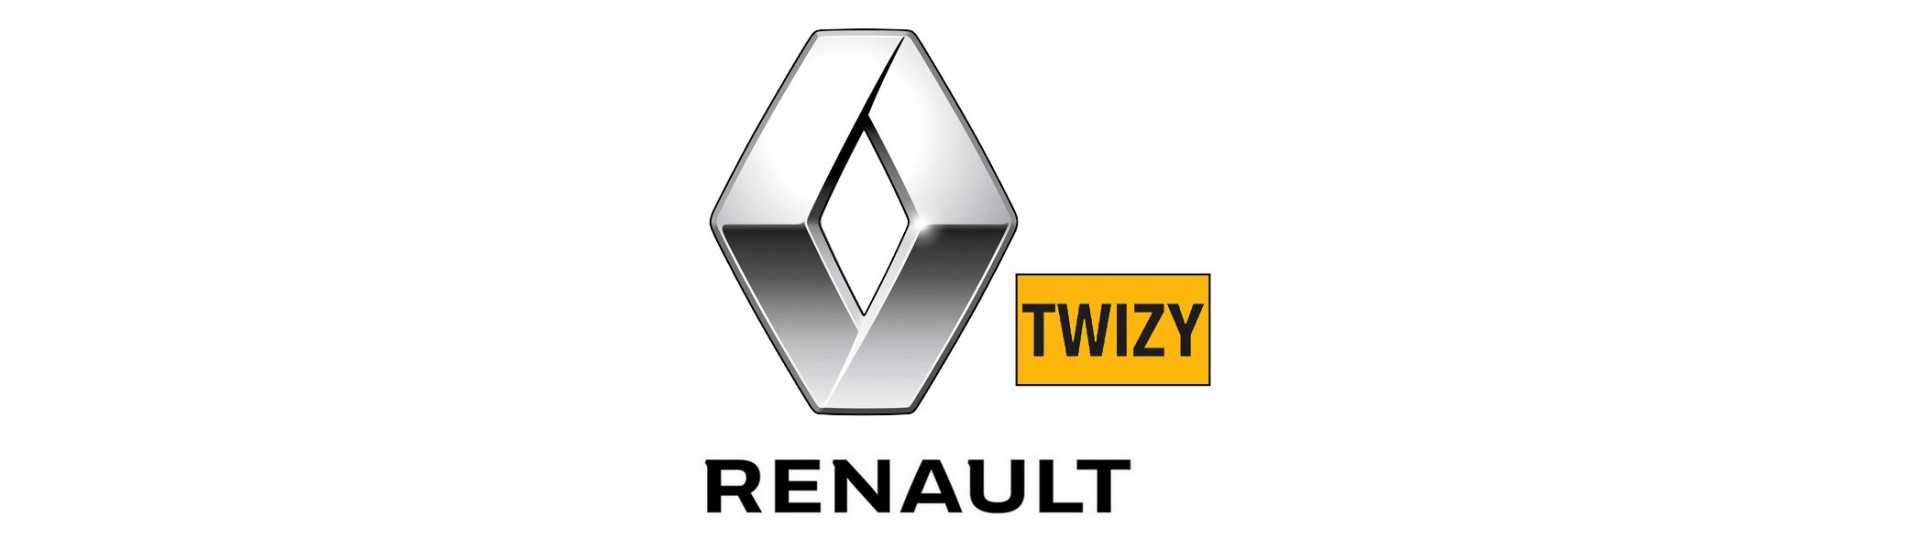 Melhor indicador de preço para o carro sem licença Renault Twizy